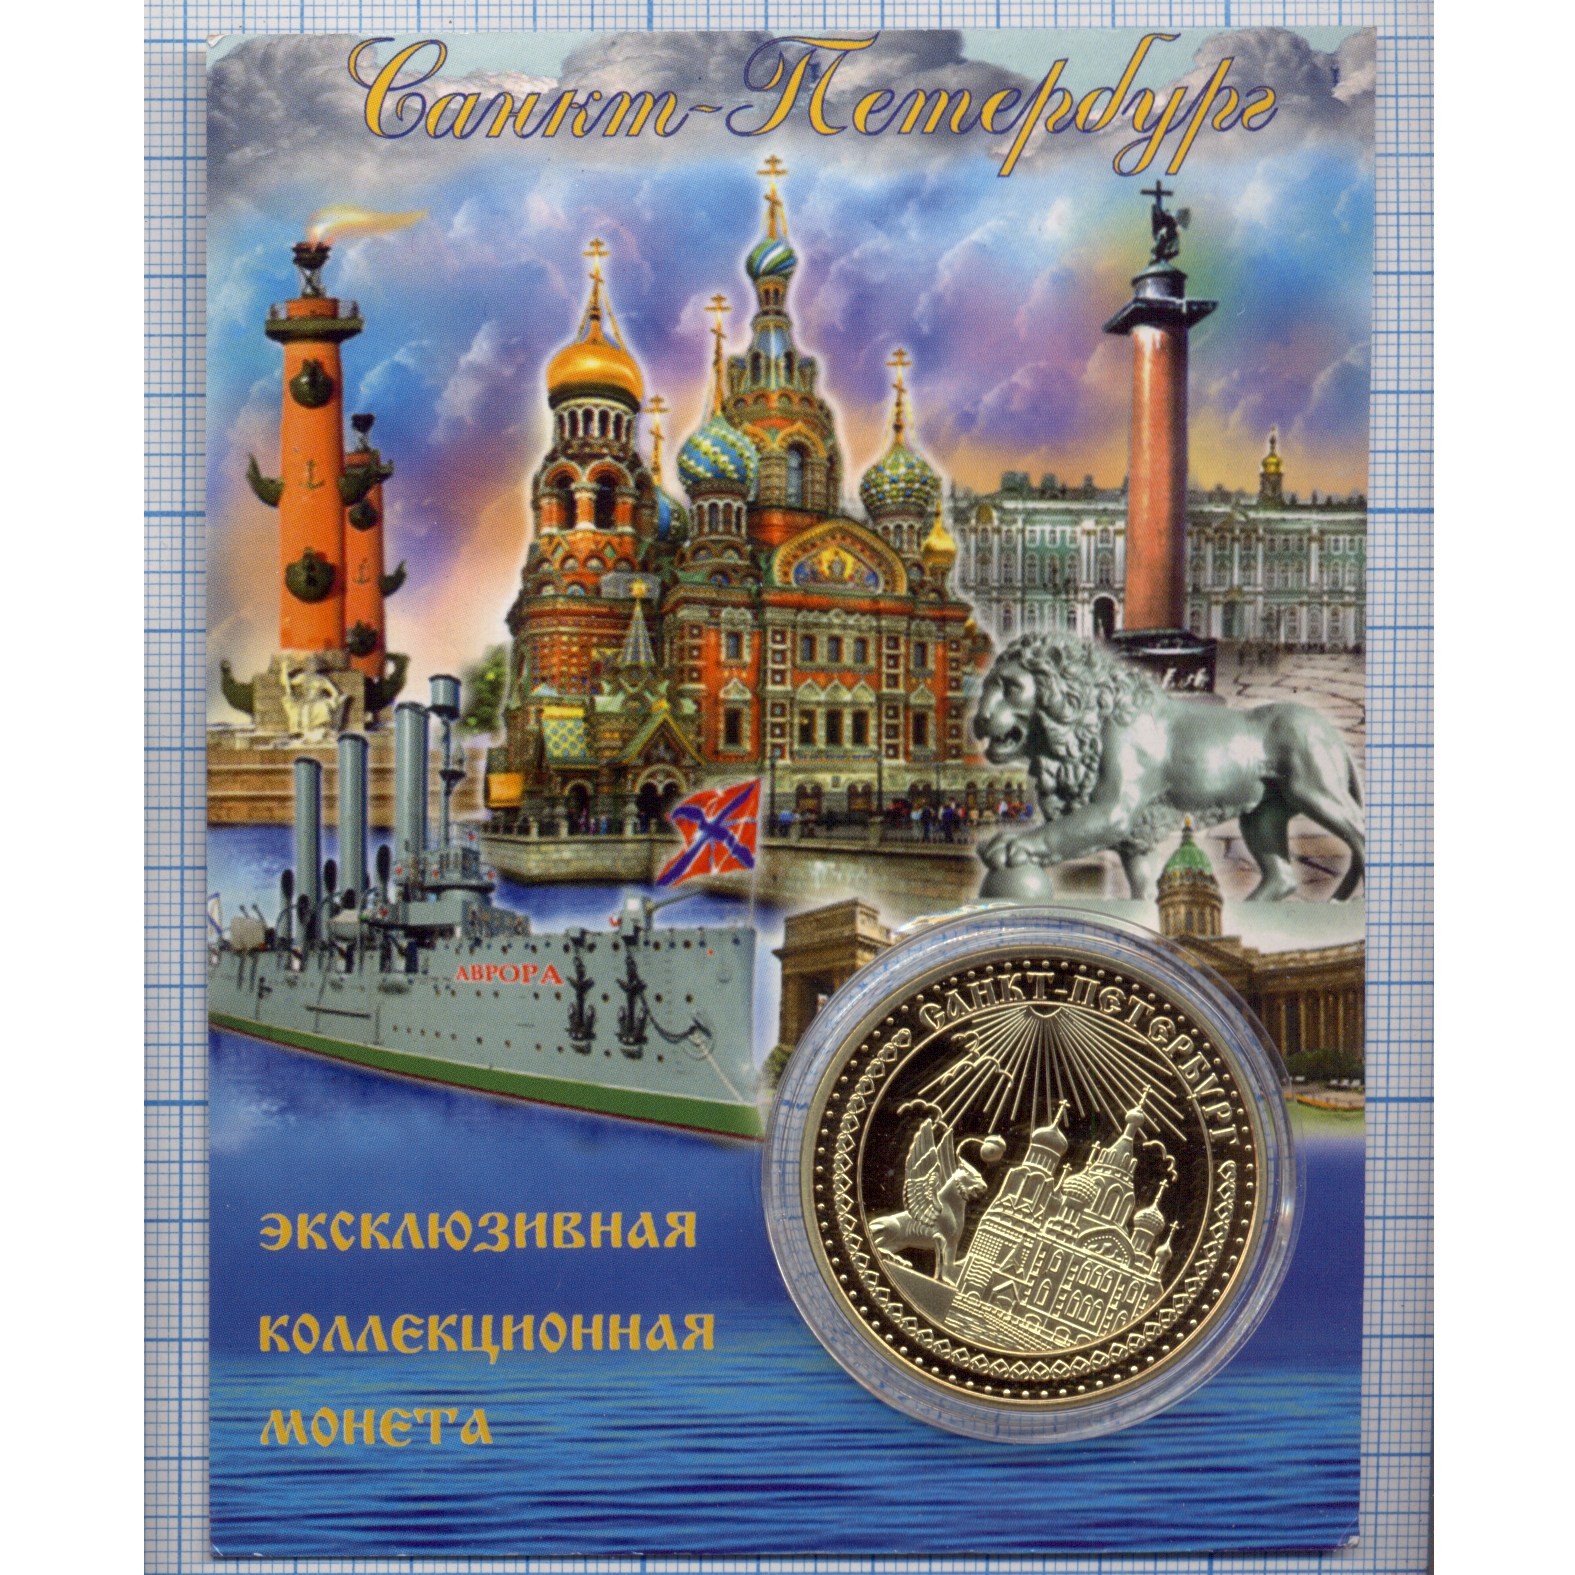 Эксклюзивная коллекционная монета Санкт-Петербург